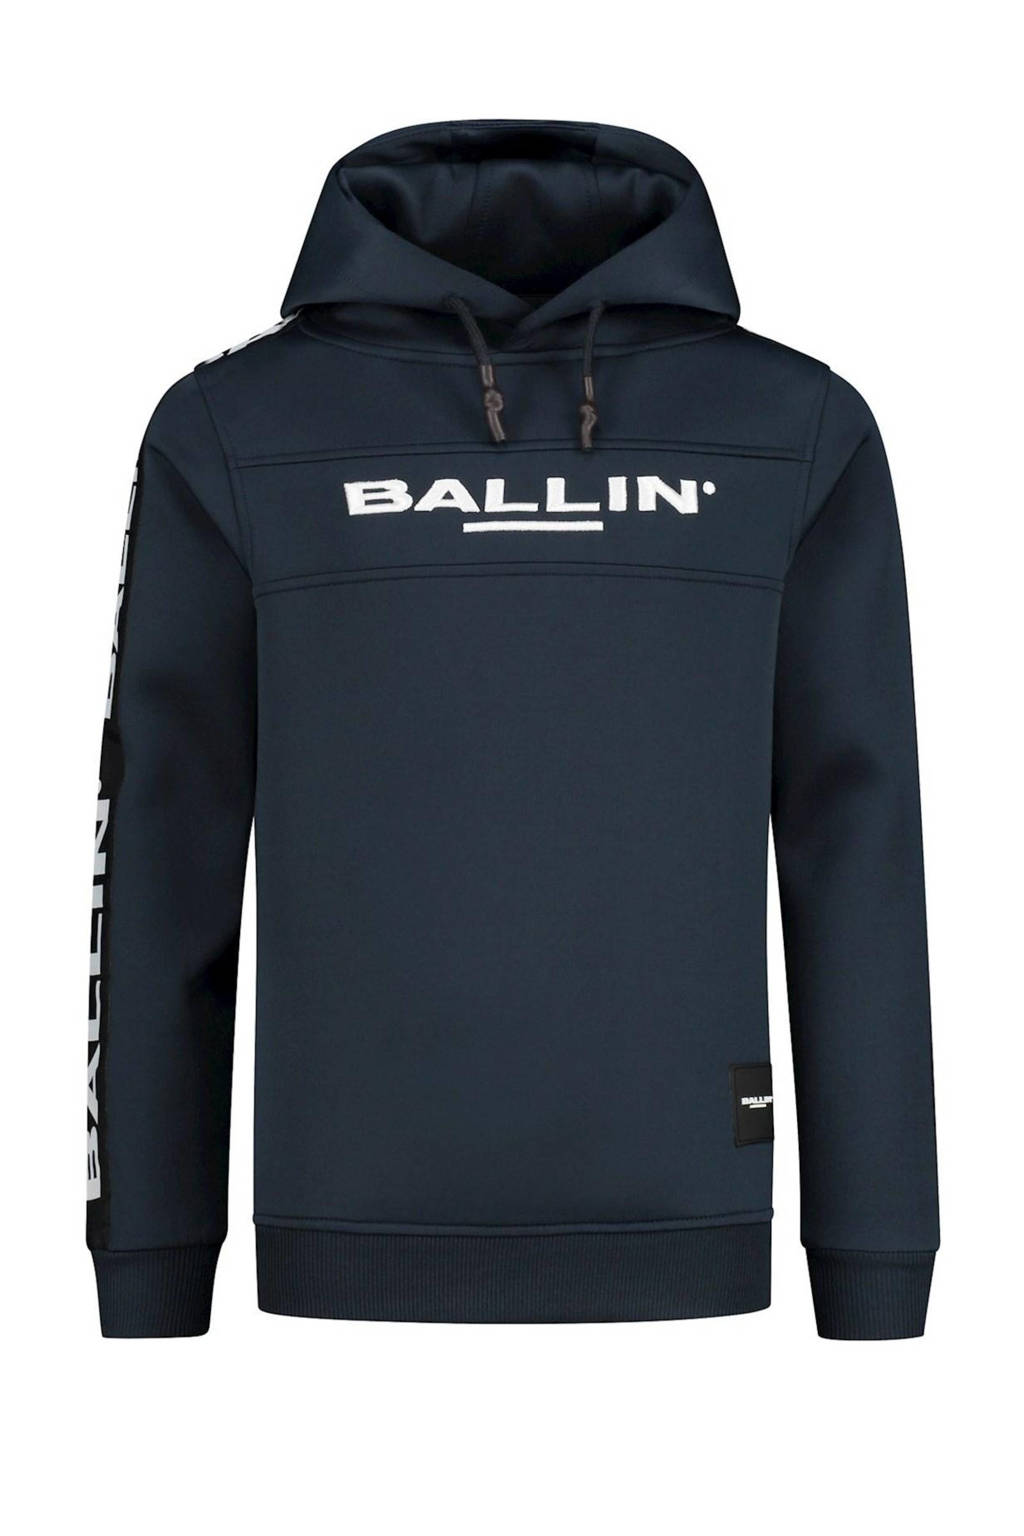 Donkerblauwe jongens en meisjes Ballin unisex hoodie van sweat materiaal met logo dessin, lange mouwen en capuchon